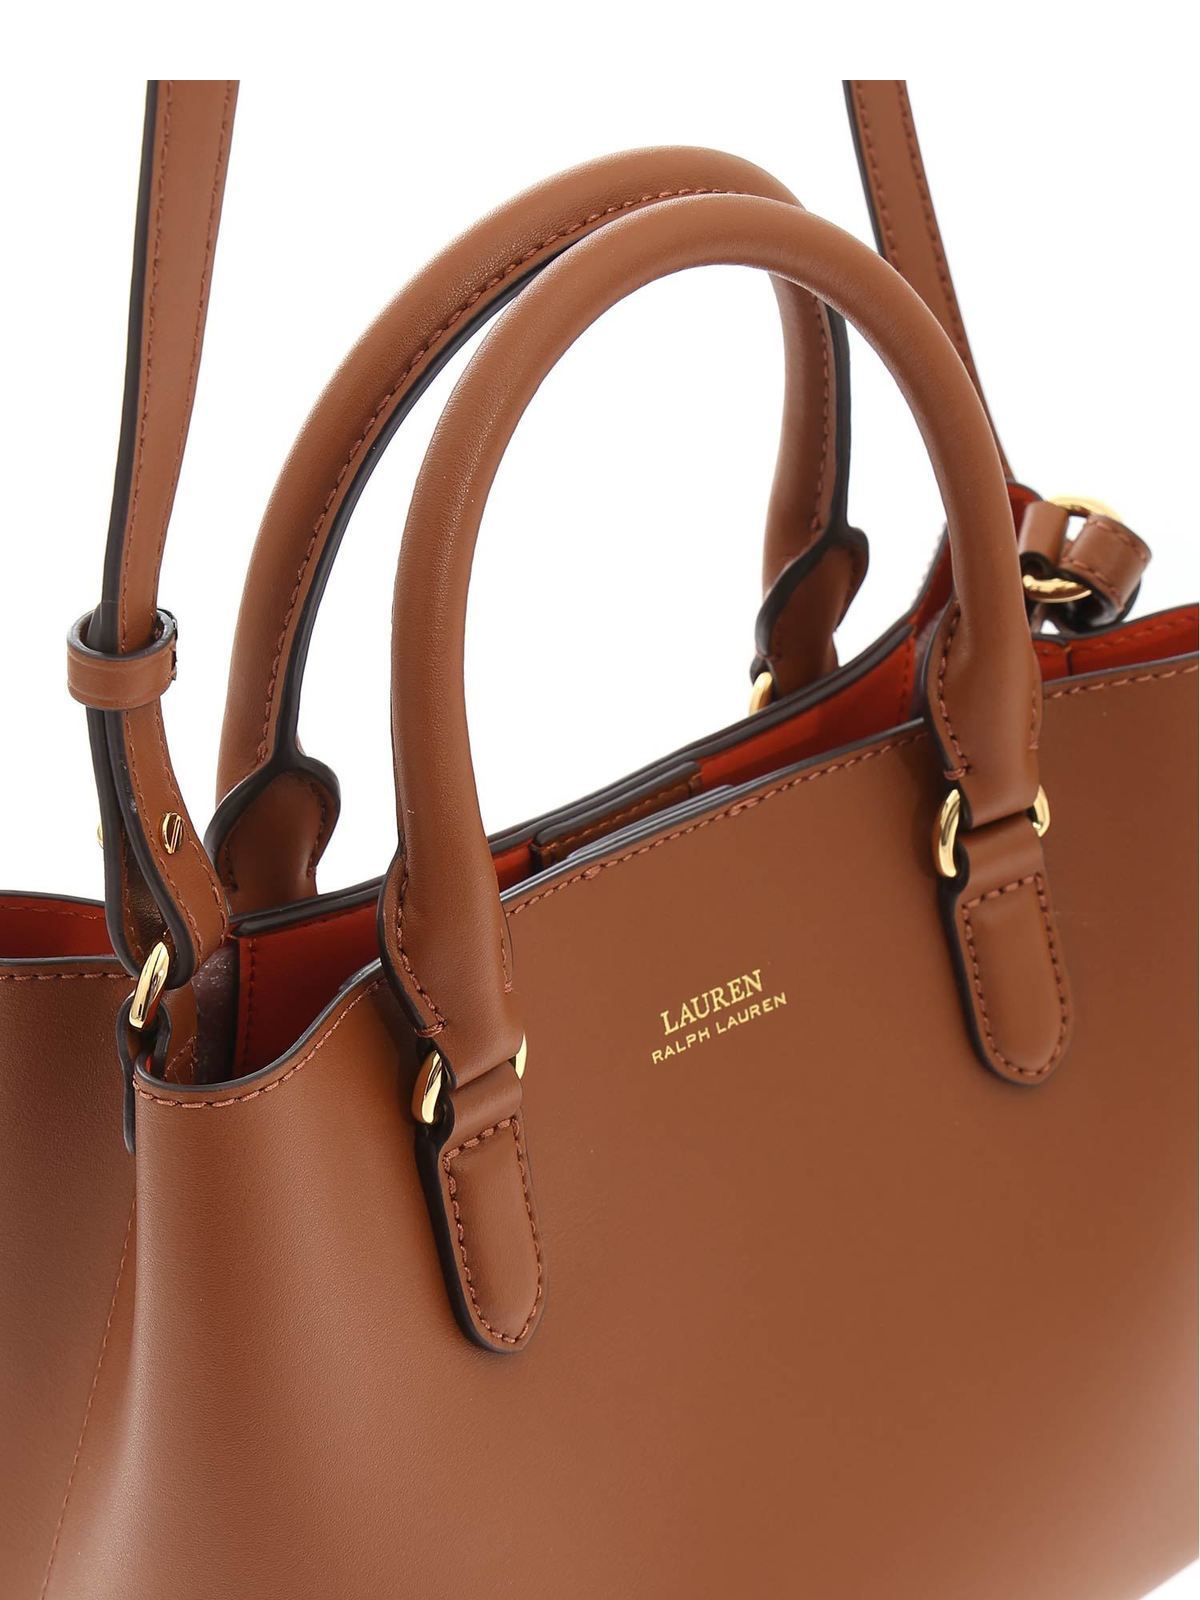 Totes bags Lauren Ralph Lauren - Marcy bag in brown - 431775153002